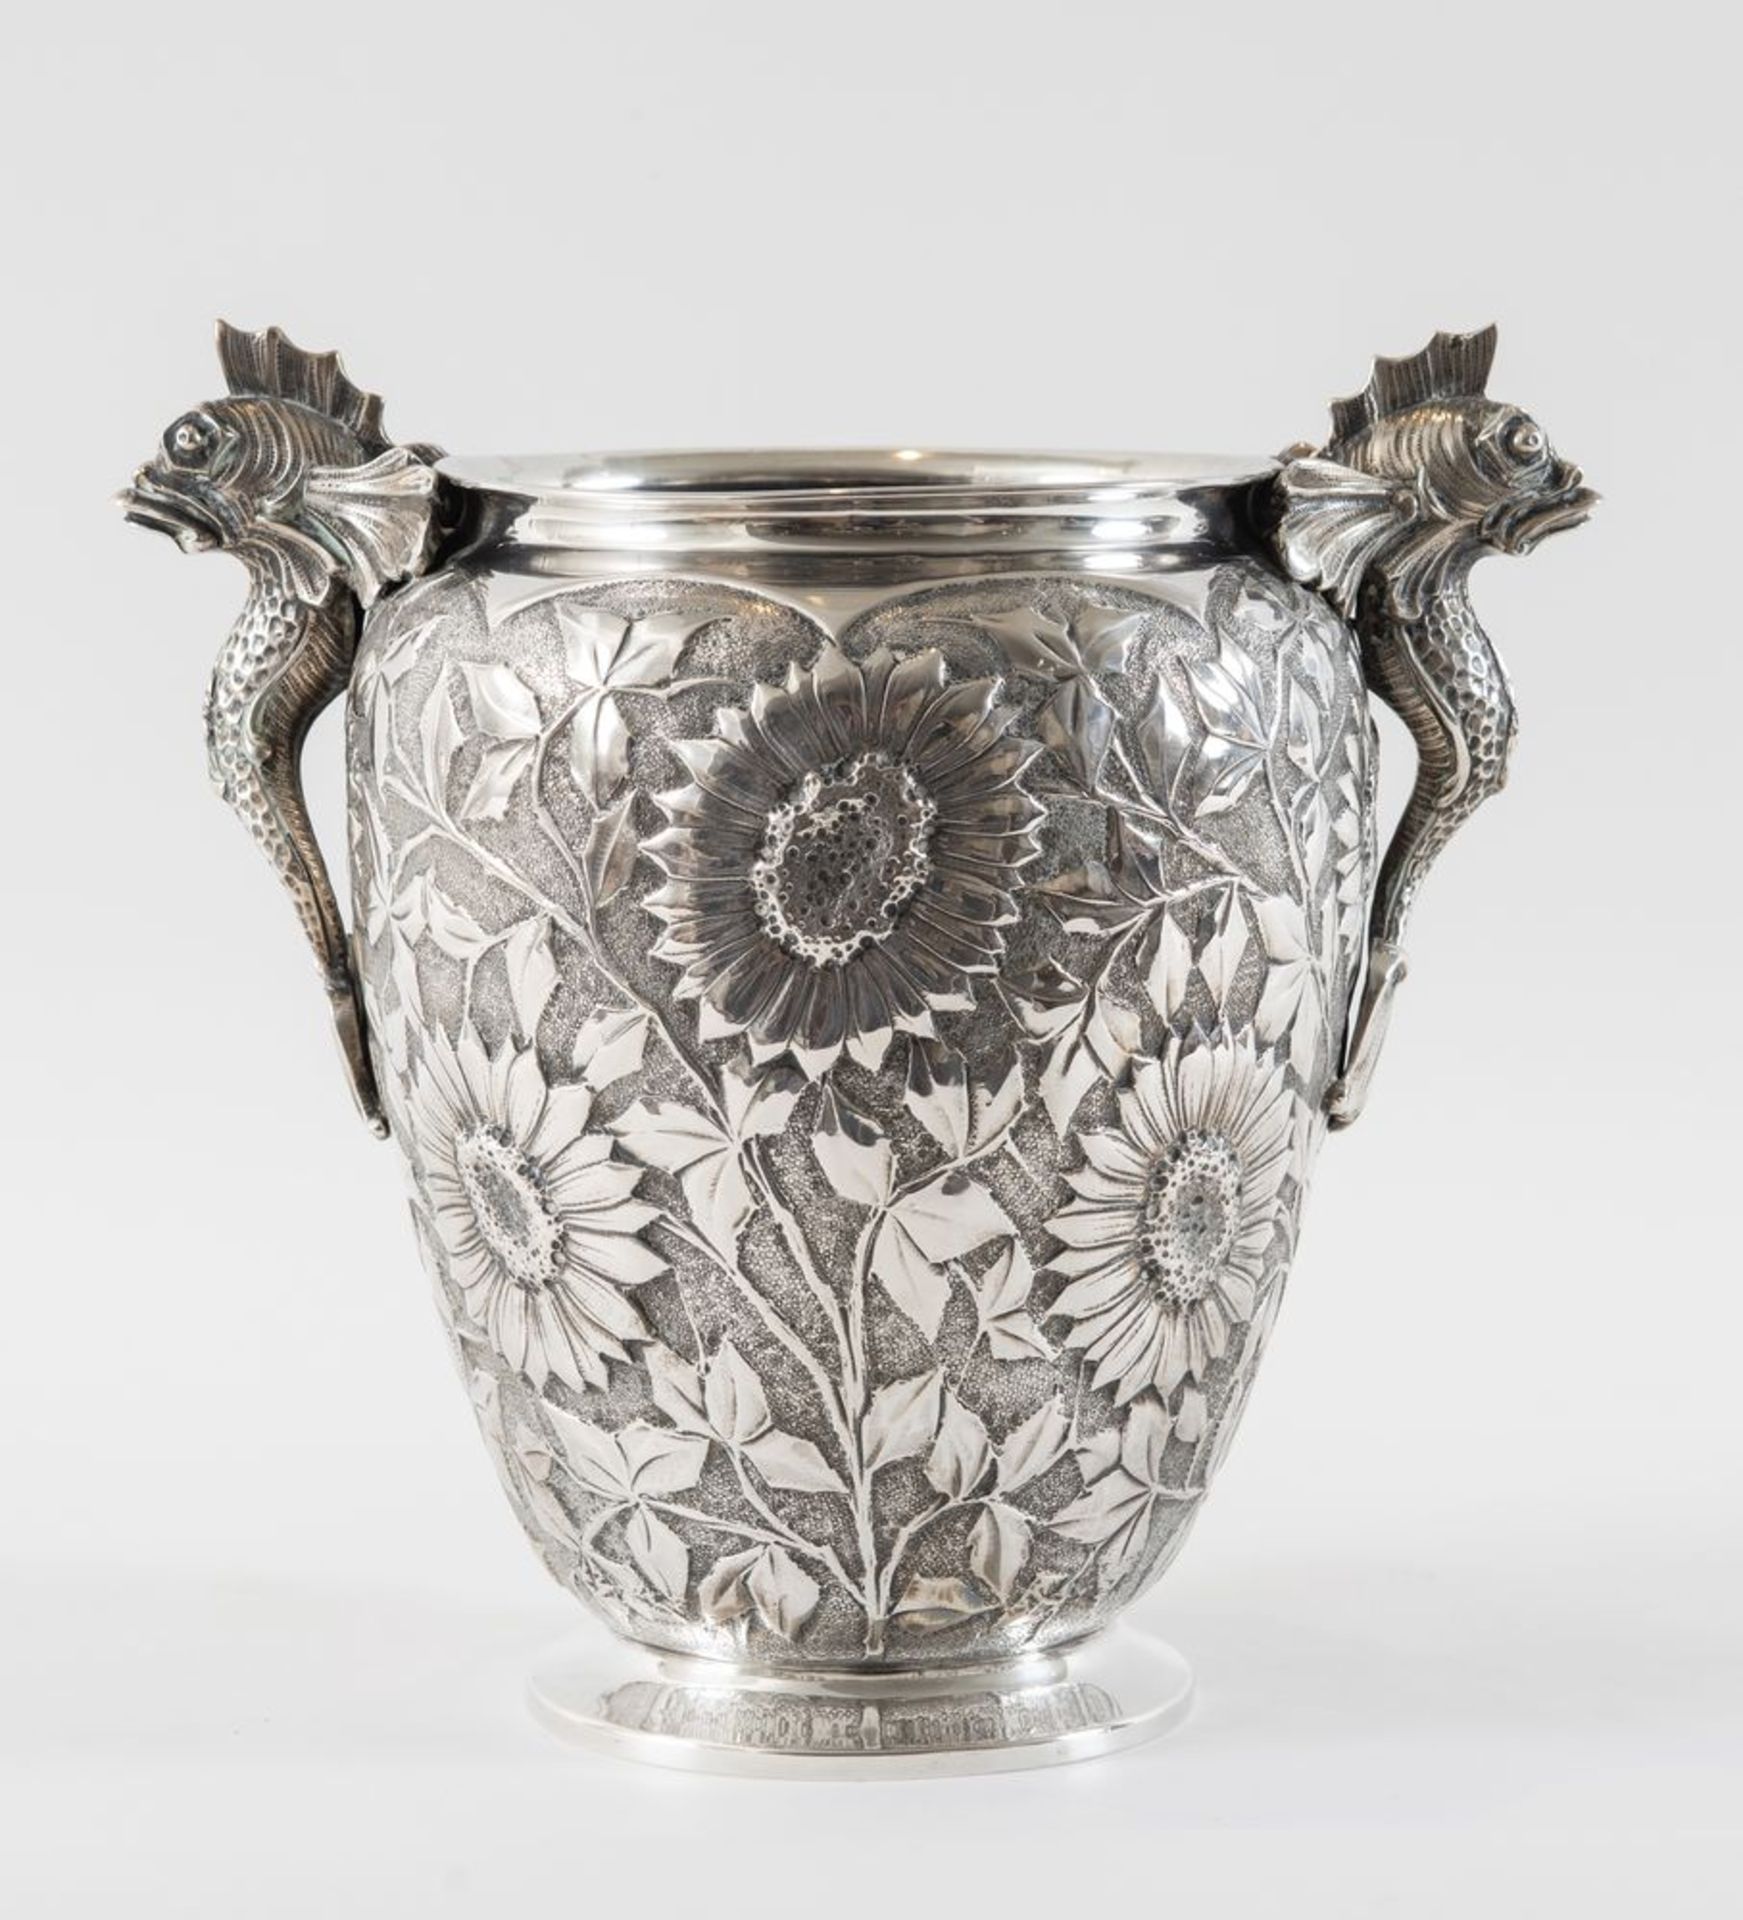 Vaso in argento 800 con prese a guisa di tritone. Sotto la base reca punzoni: 800, 800 e probabile s